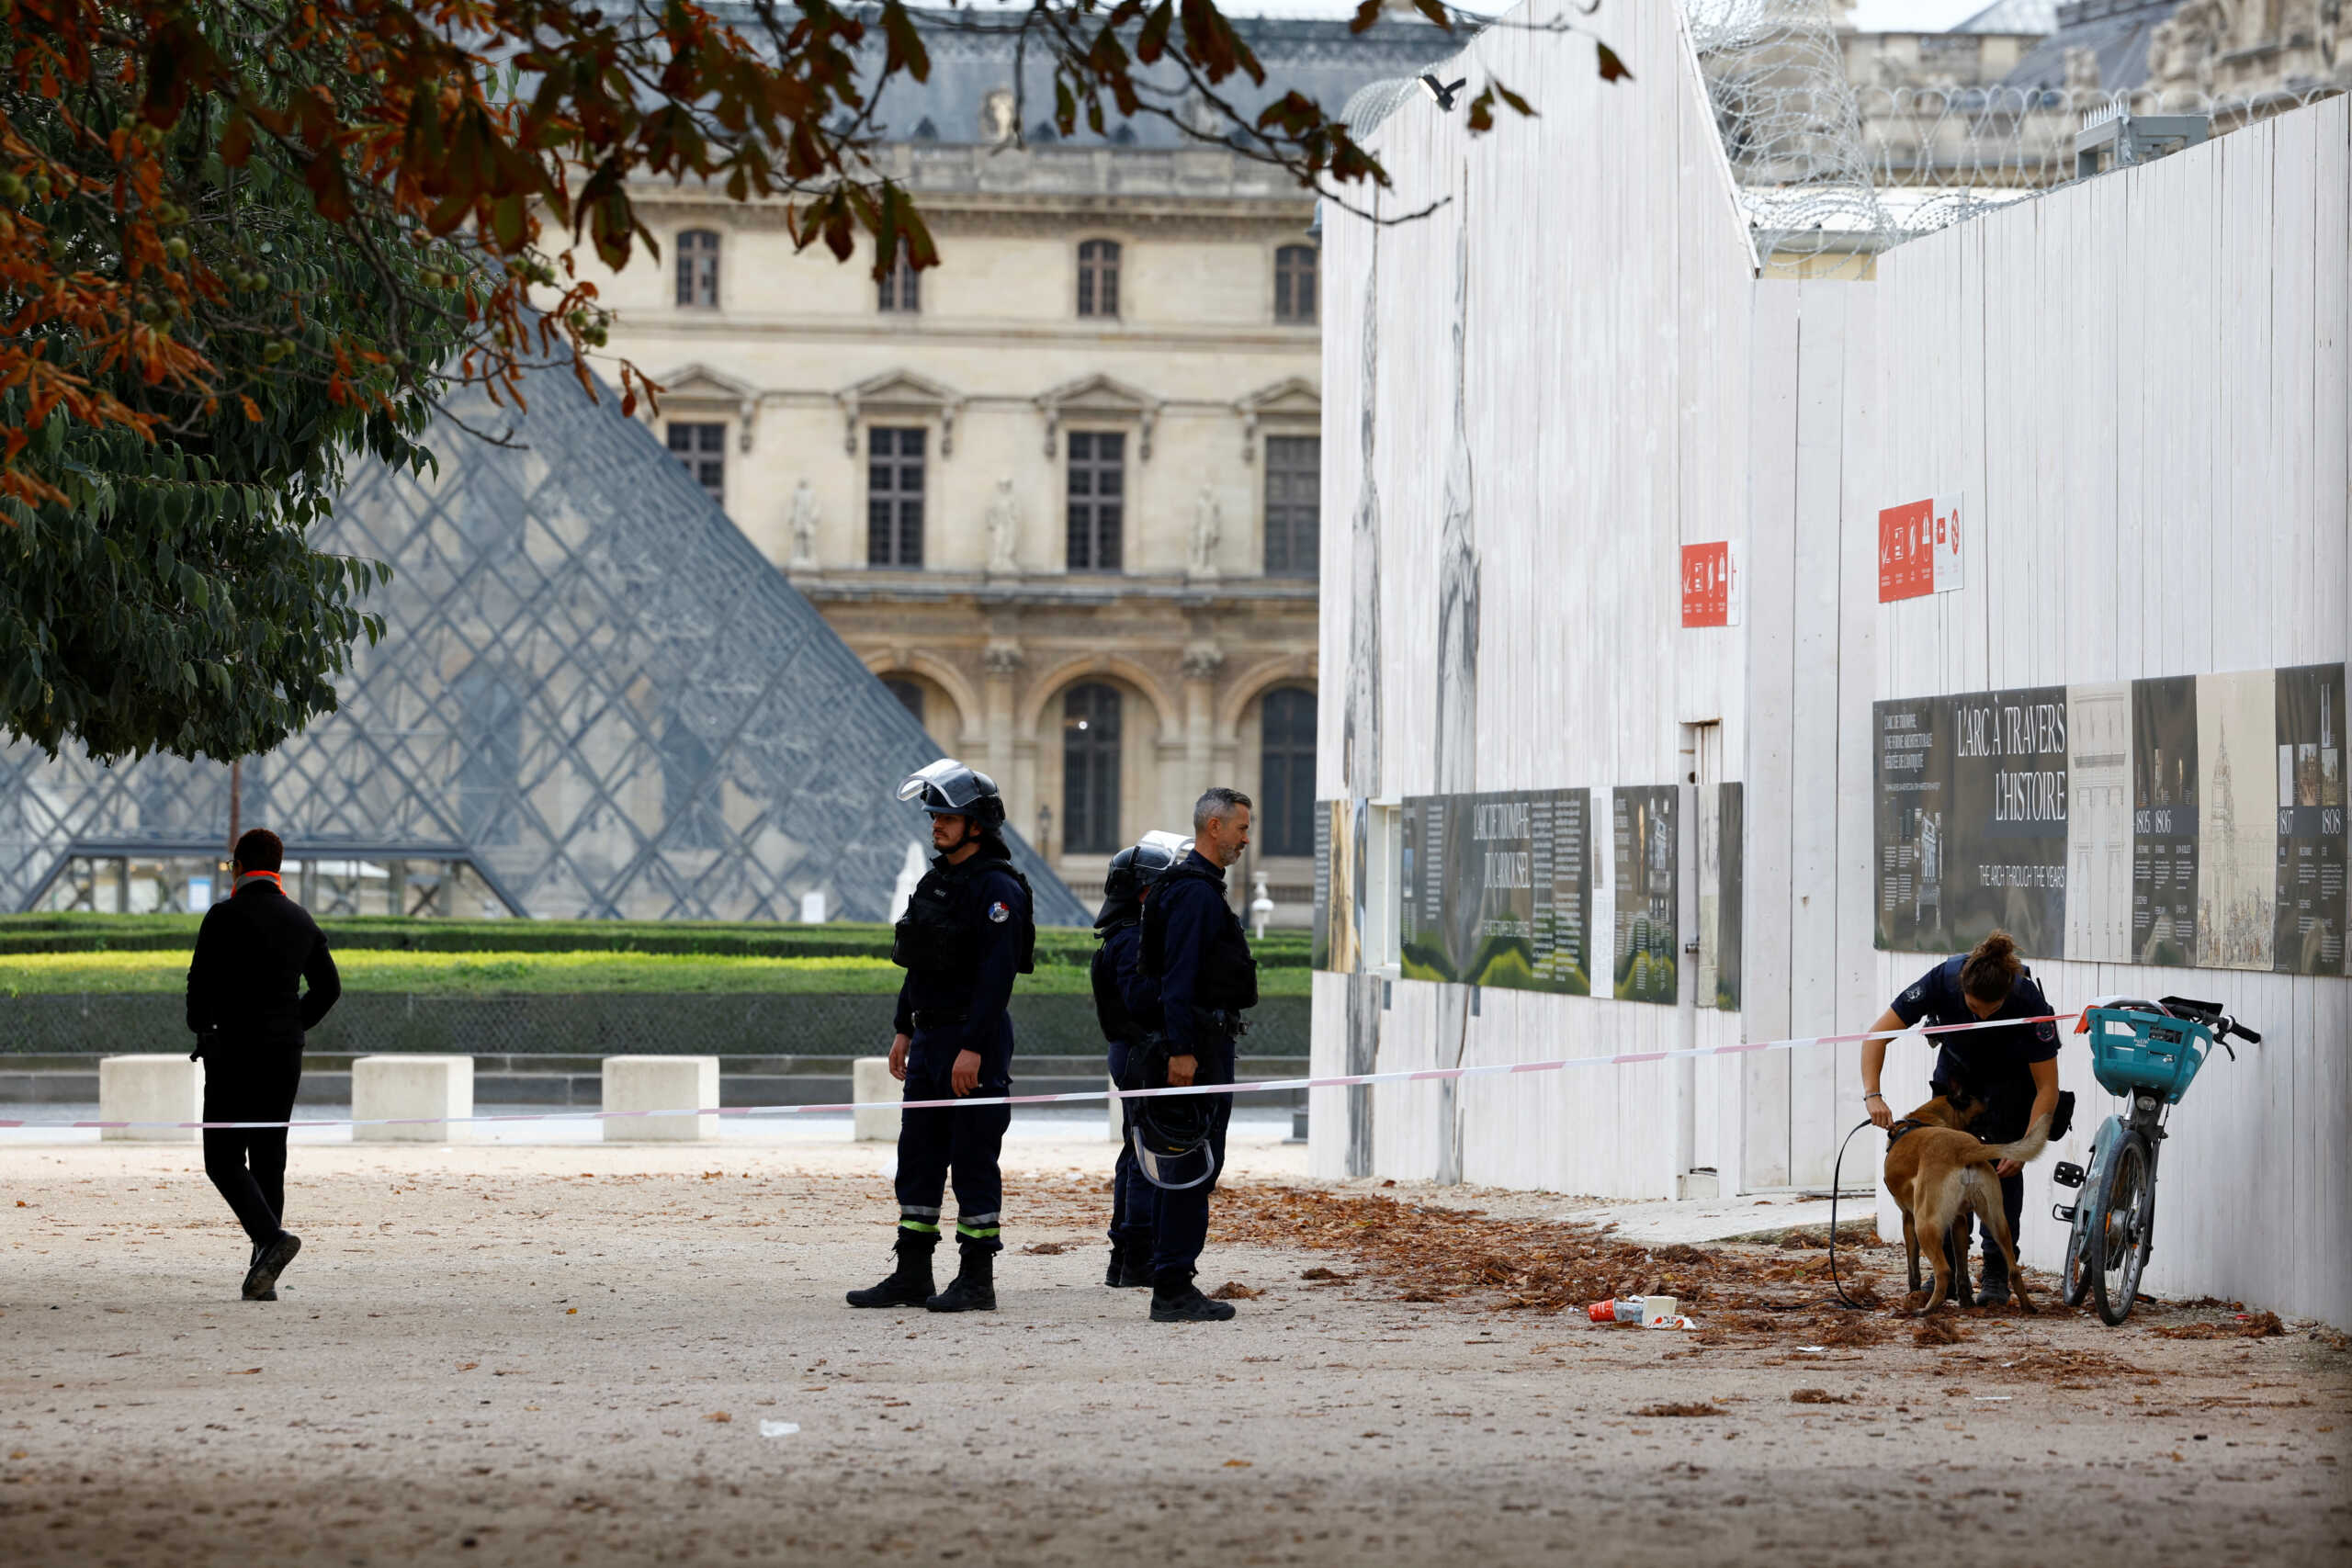 Μπαράζ απειλών για βόμβα στη Γαλλία – Εκκενώθηκαν Λούβρο, Βερσαλλίες και σιδηροδρομικός σταθμός